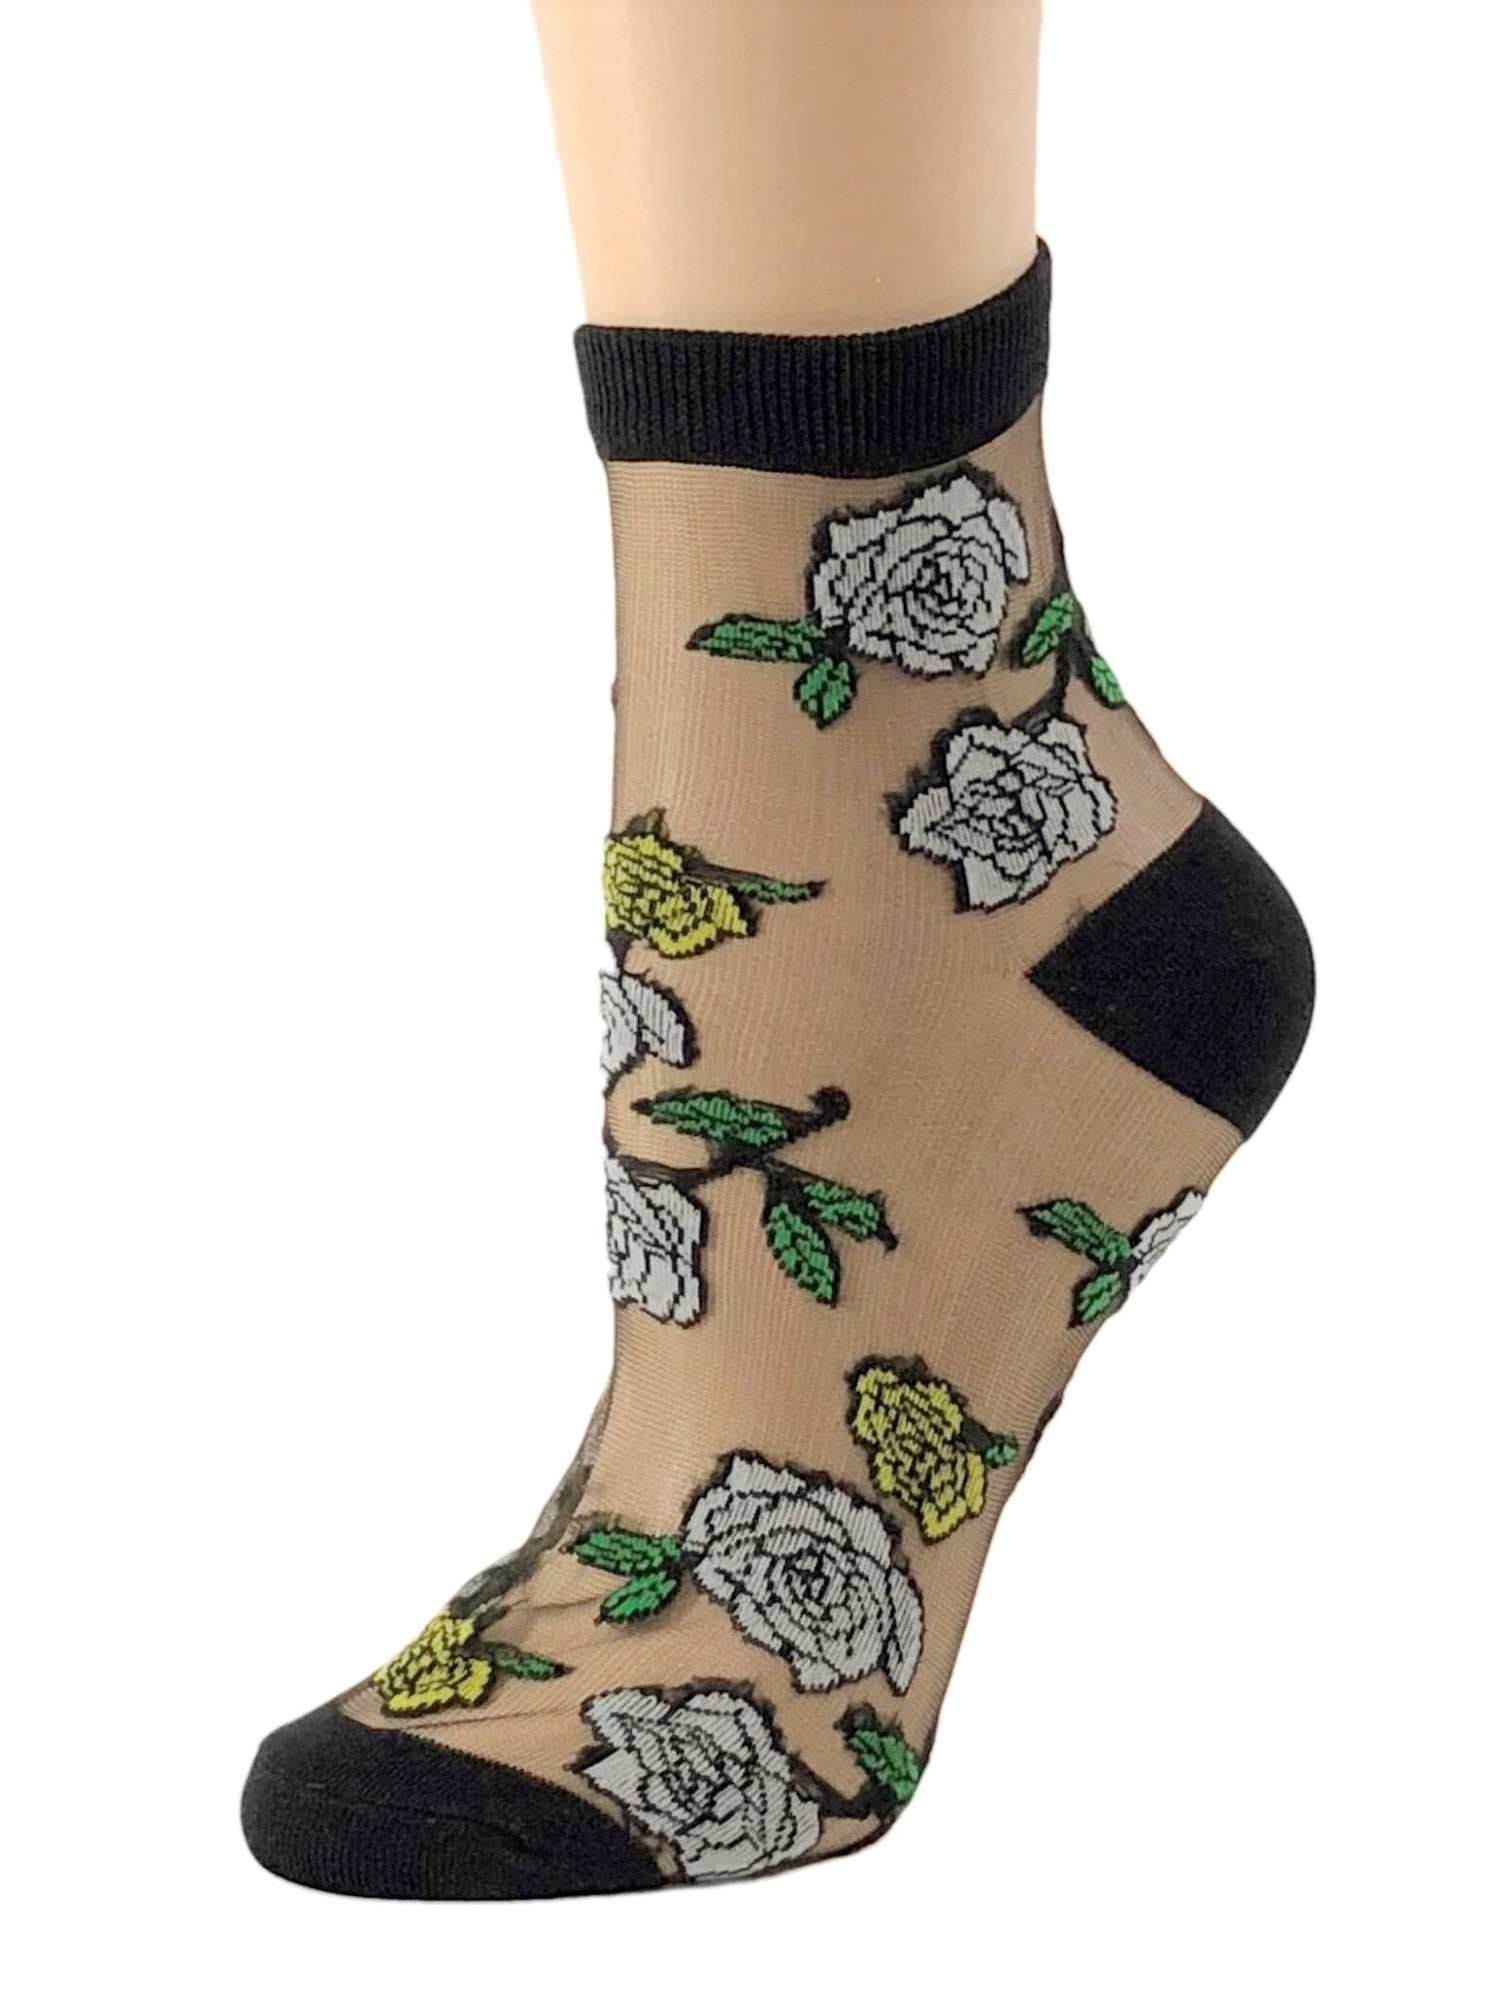 Sharp White Roses Sheer Socks - Global Trendz Fashion®